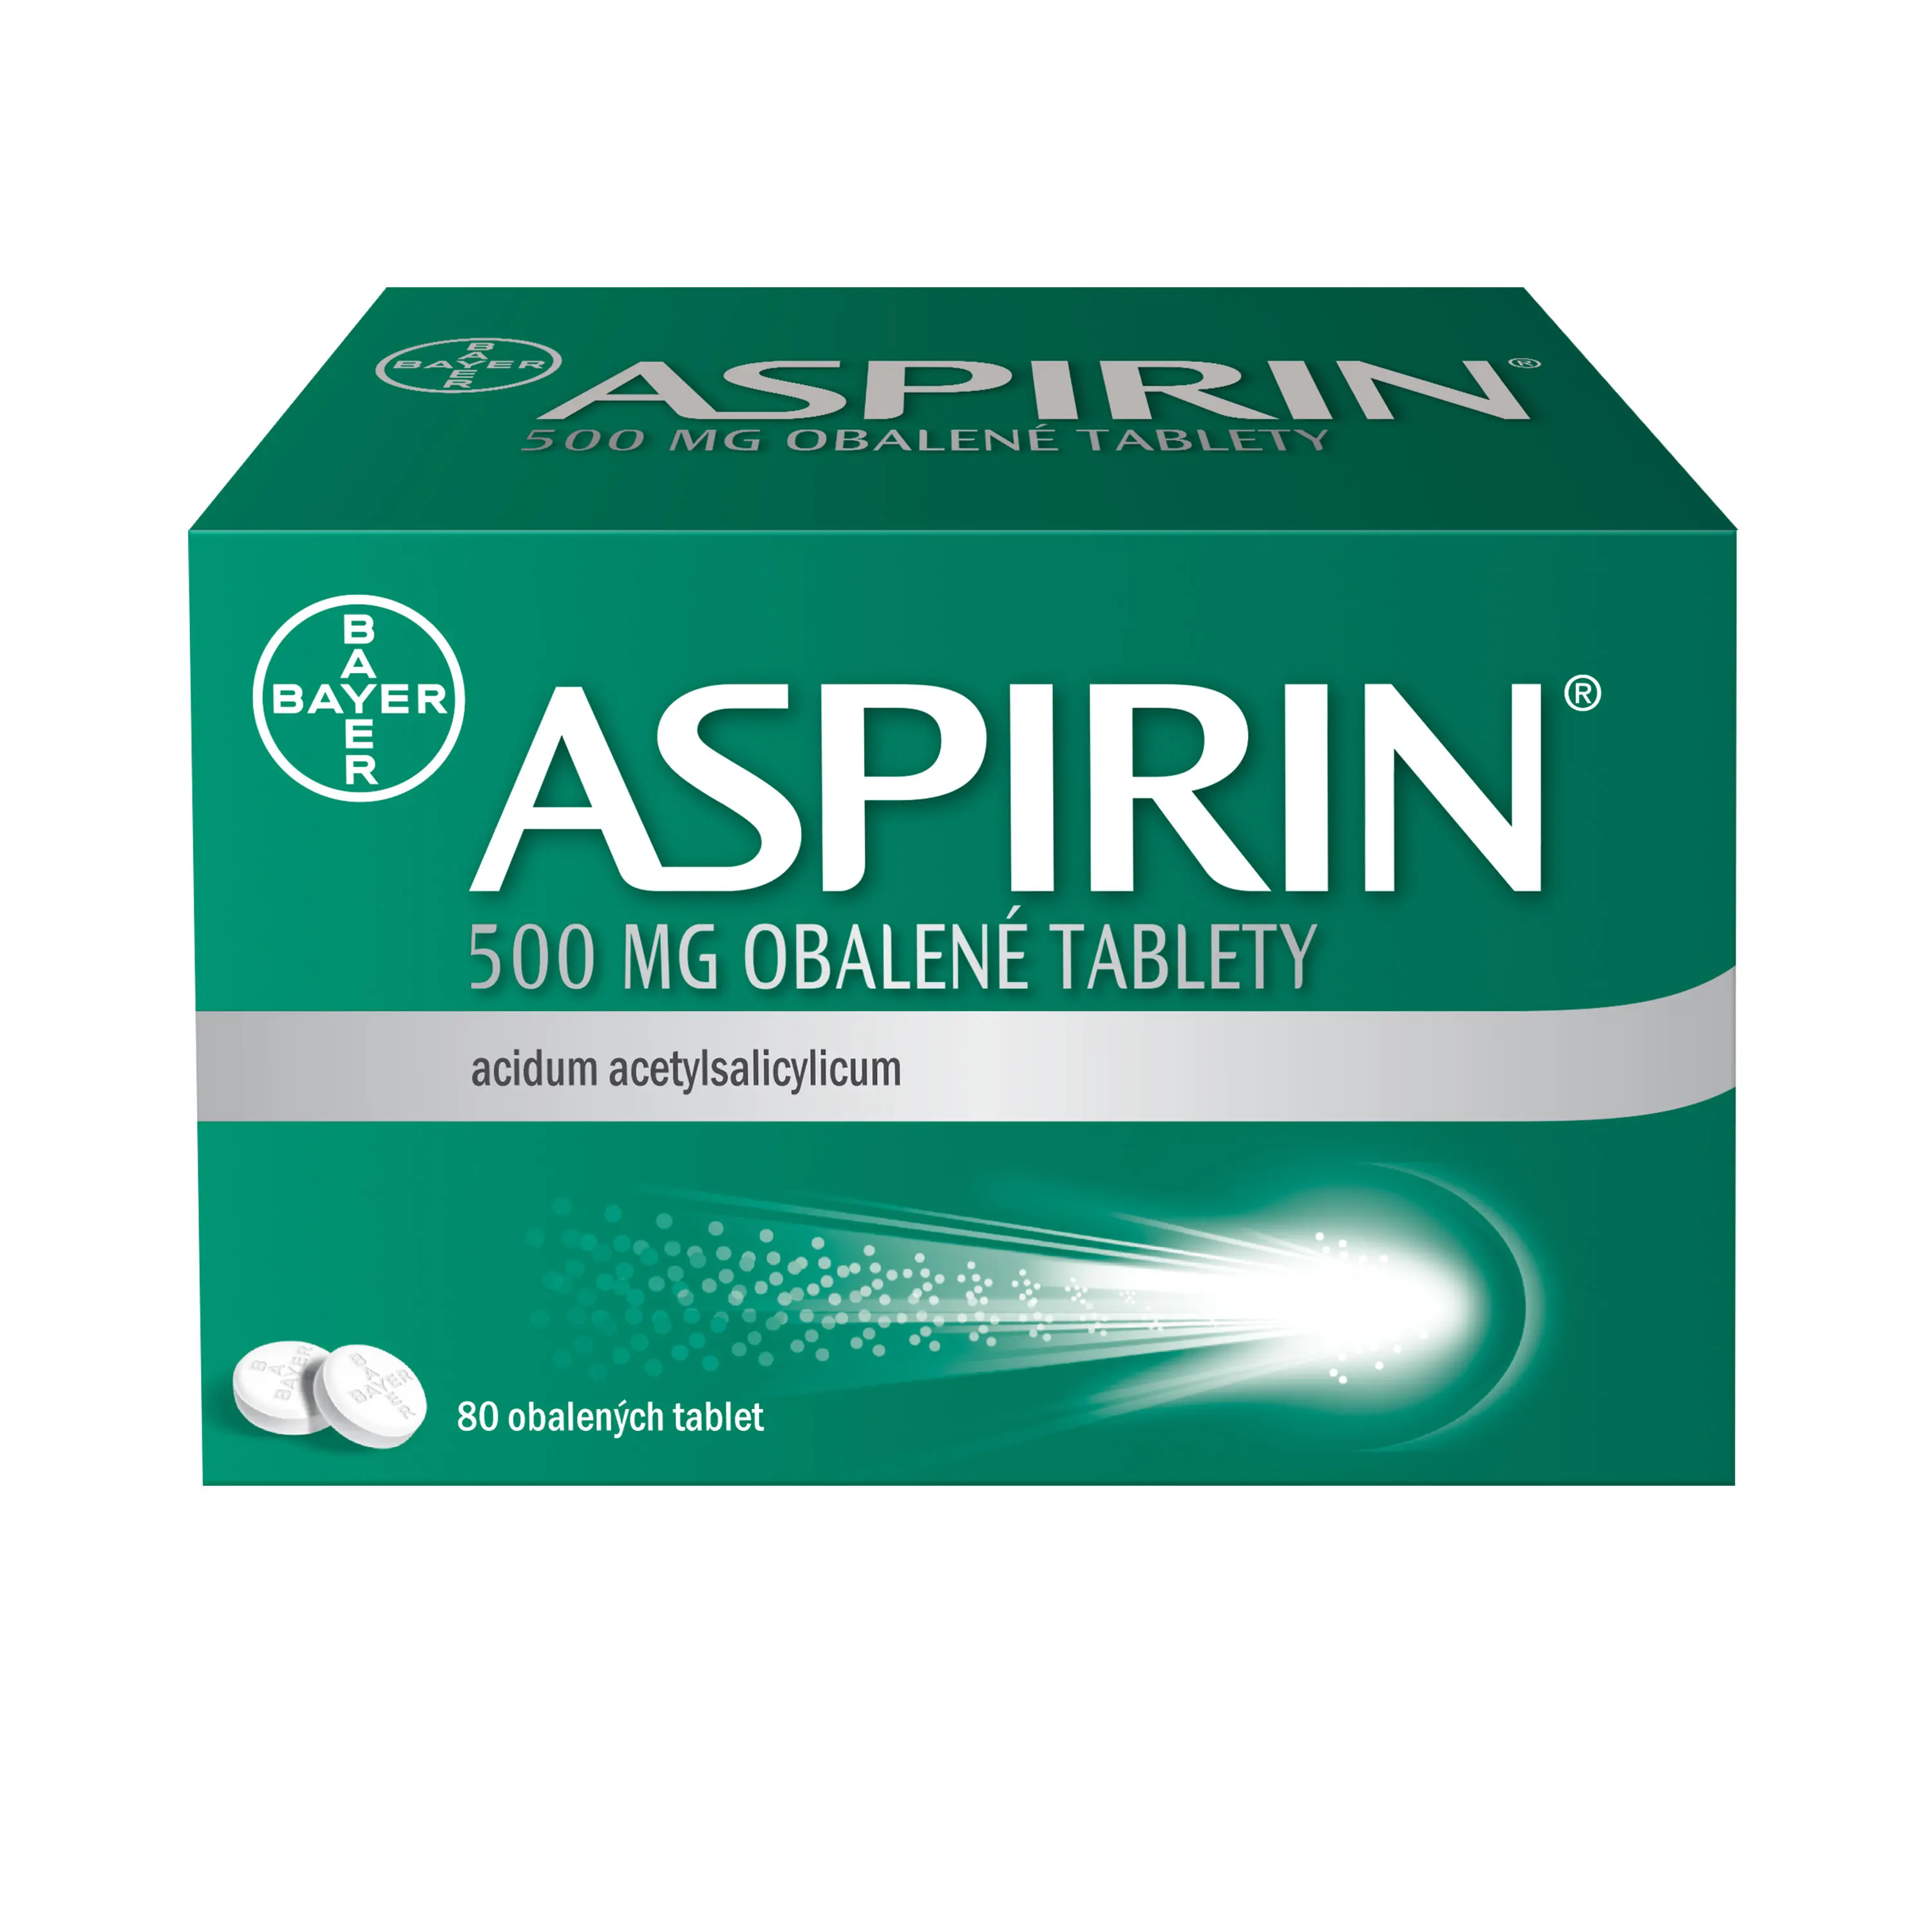 Aspirin 500 mg obalené tablety tbl.obd. 80 x 500 mg